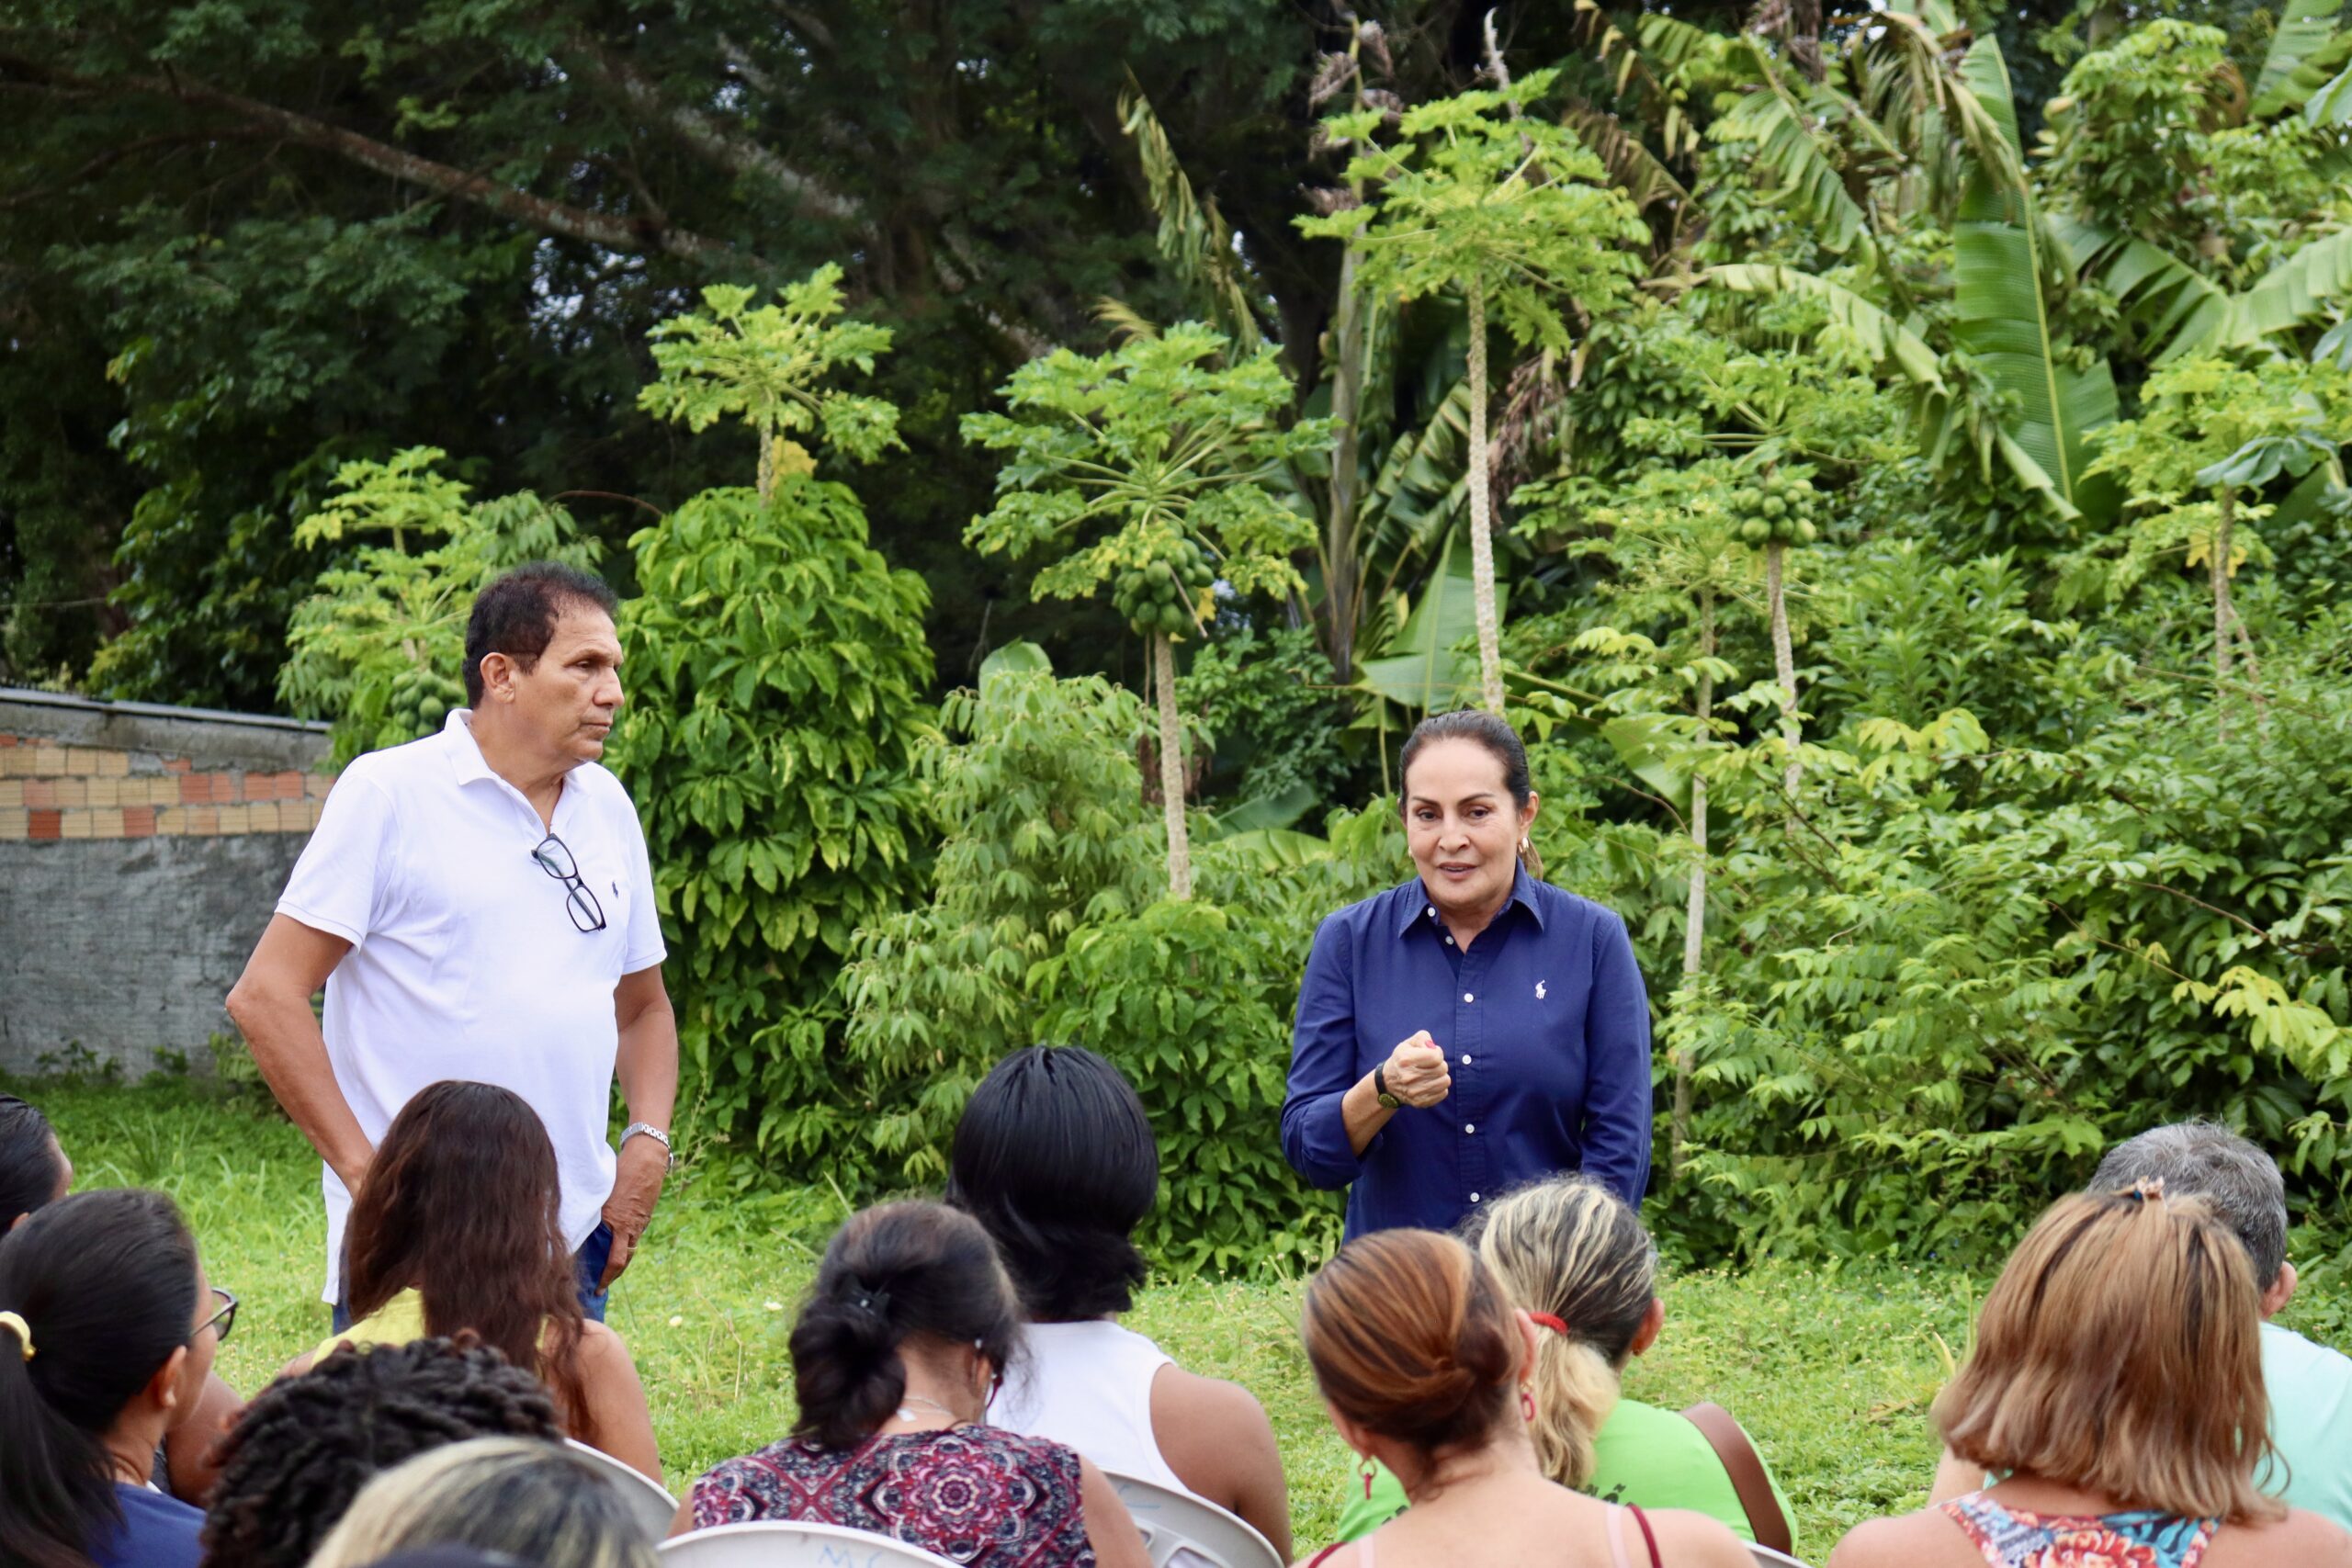 Vereadora reúne com comunidade no Nova Cidade e acolhe demandas dos moradores